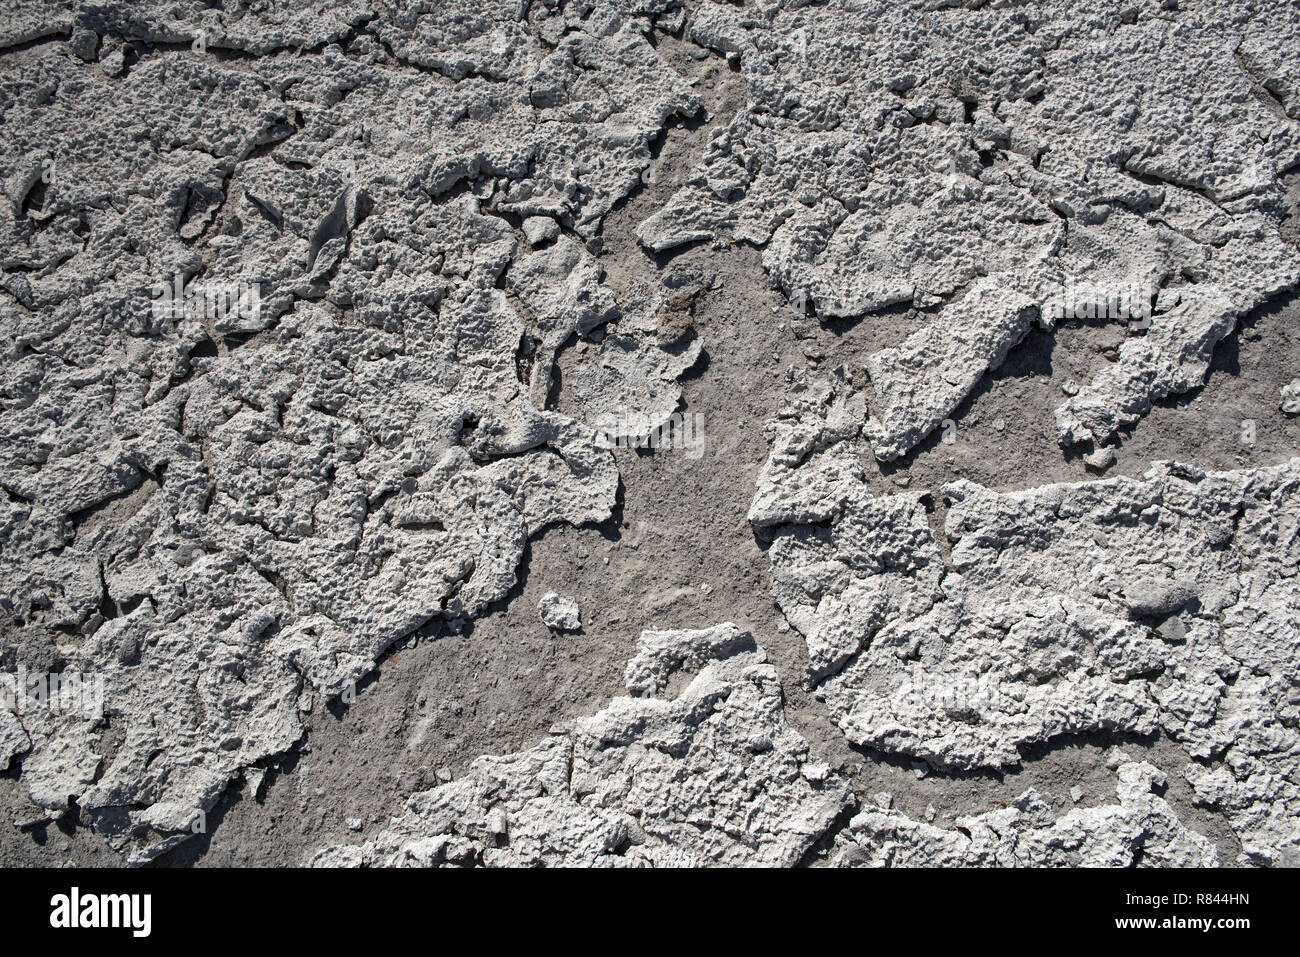 Lago seco con textura natural de roturas de arcilla y sal en la tierra causa de deshidratación durante un largo tiempo, el Parque Nacional de Nxai Pan, Botswana Foto de stock